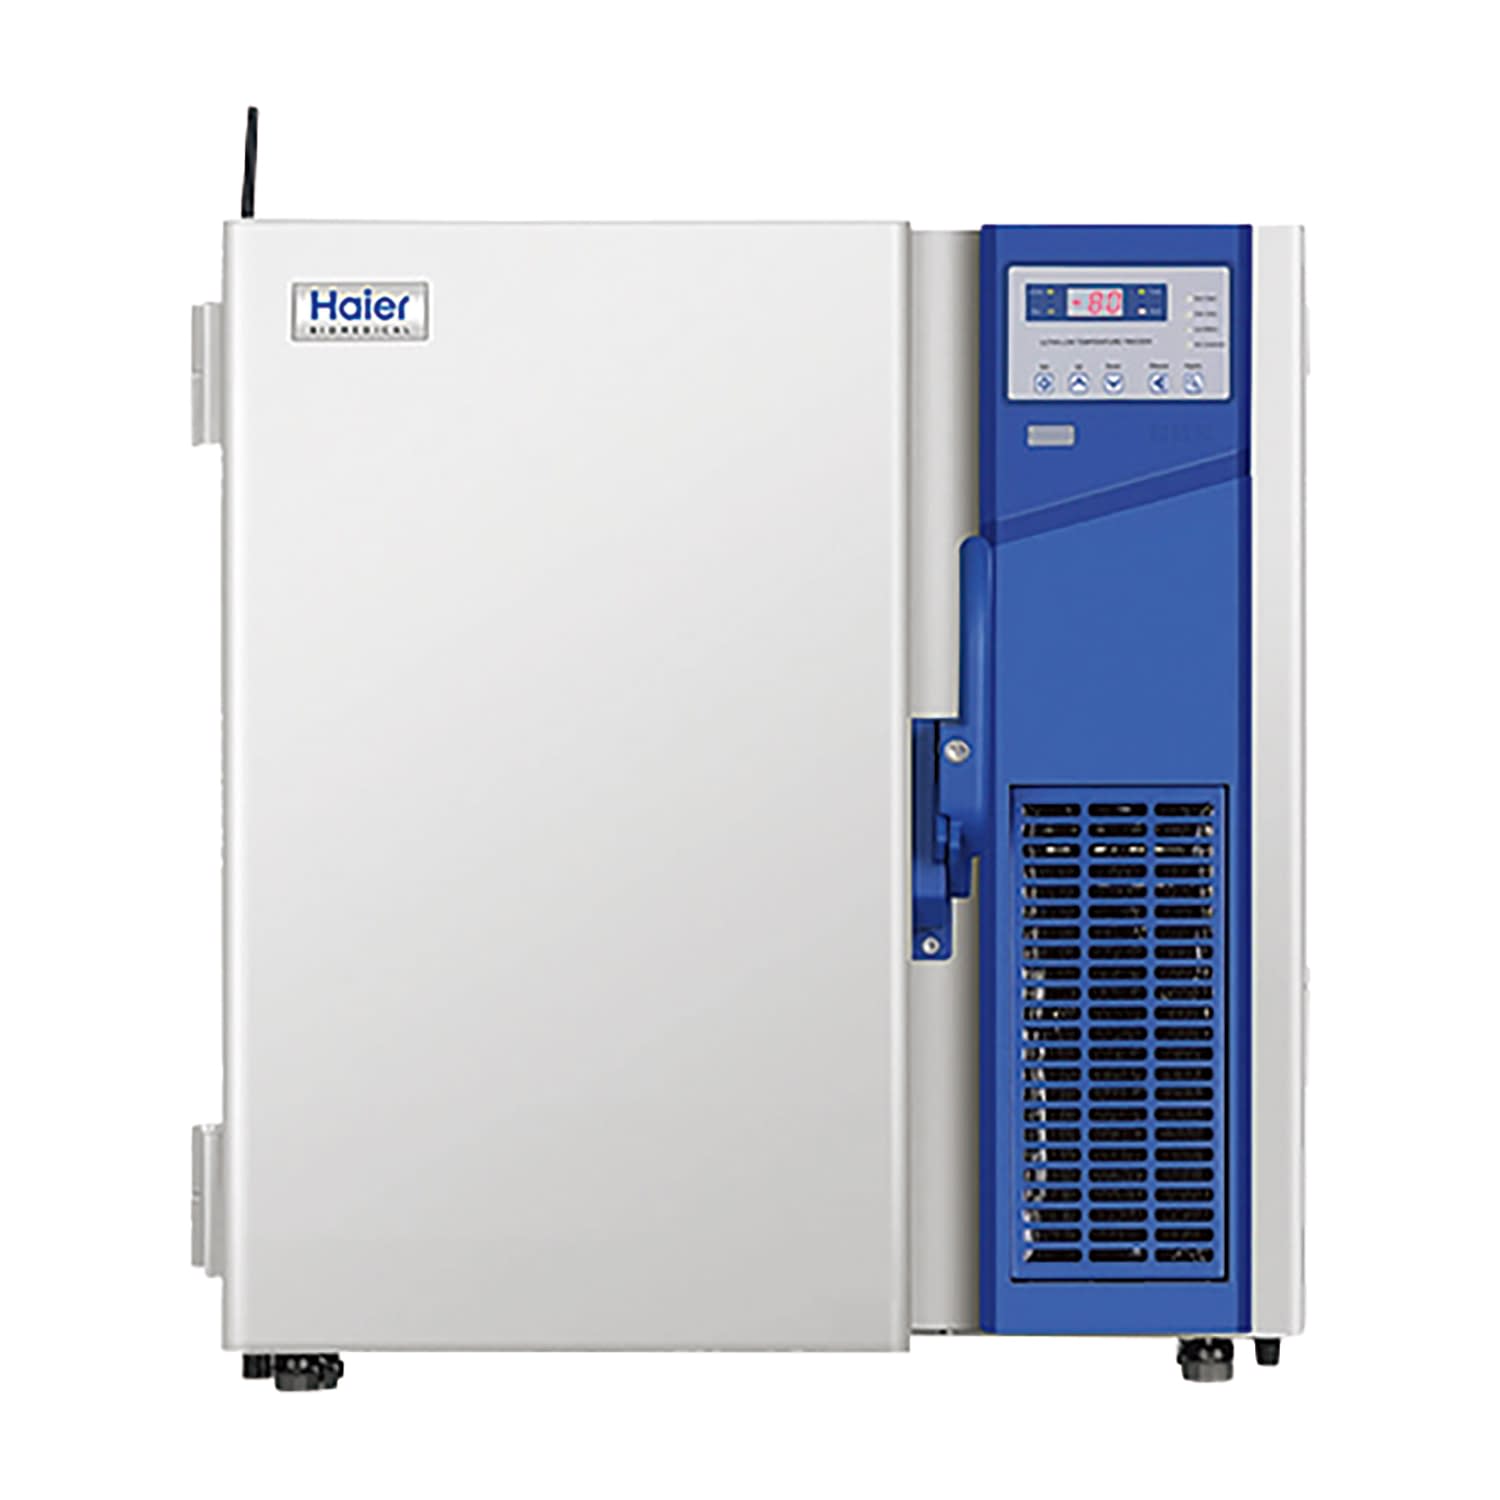 超低温フリーザー DW-86L100J 1台 Haier Biomedical ホワイト 25-6070-00 フリーザー 低温槽 超低温フリーザー